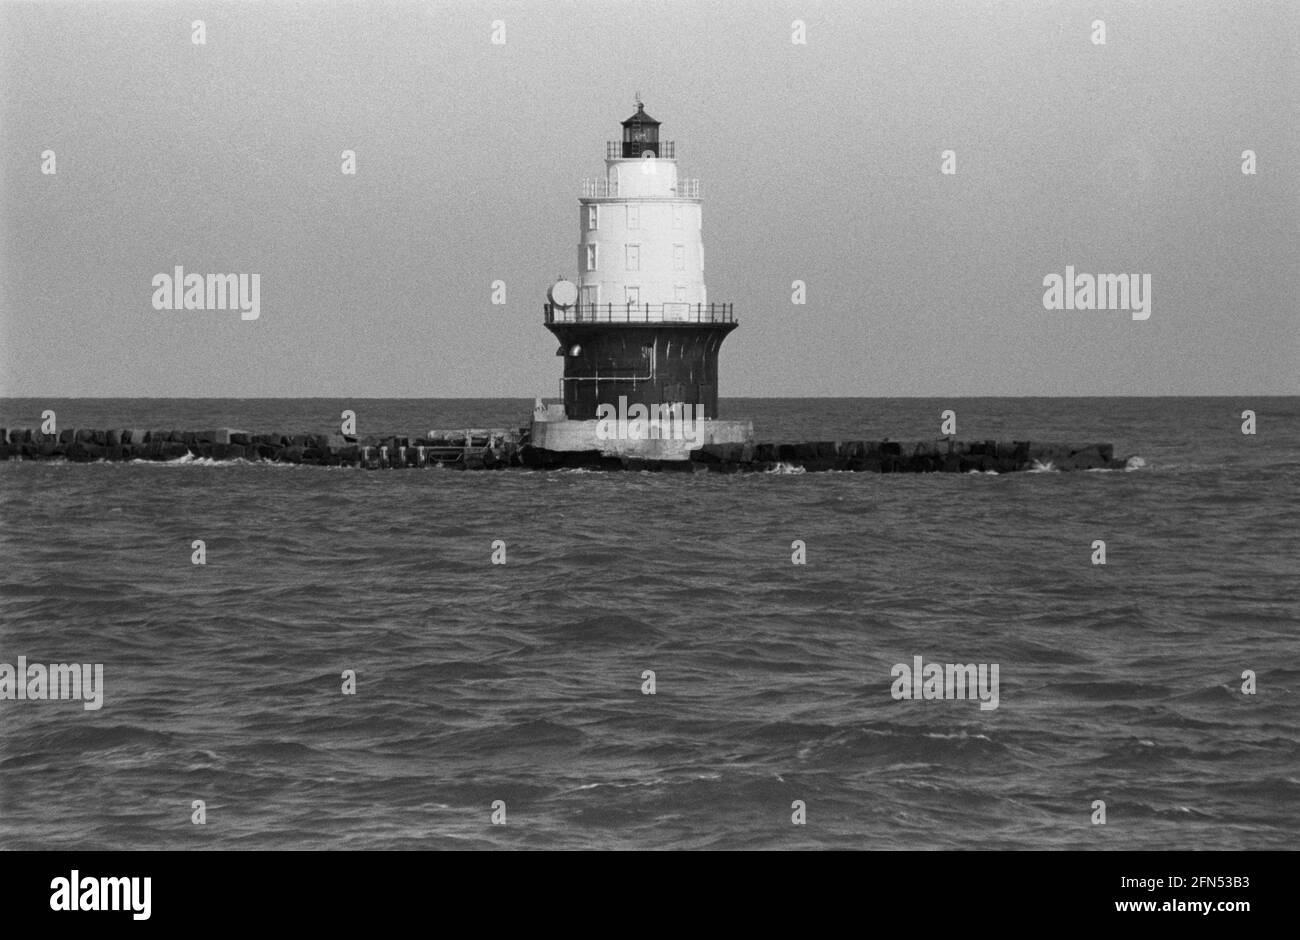 Harbour of Refuge Lighthouse, Delaware Bay Breakwater (Cape May, NJ nach Lewes, DE Ferry), November 1992. Teil einer Serie von 35 Leuchttürmen an der amerikanischen Ostküste, die zwischen November 1992 und September 1993 fotografiert wurden. Stockfoto